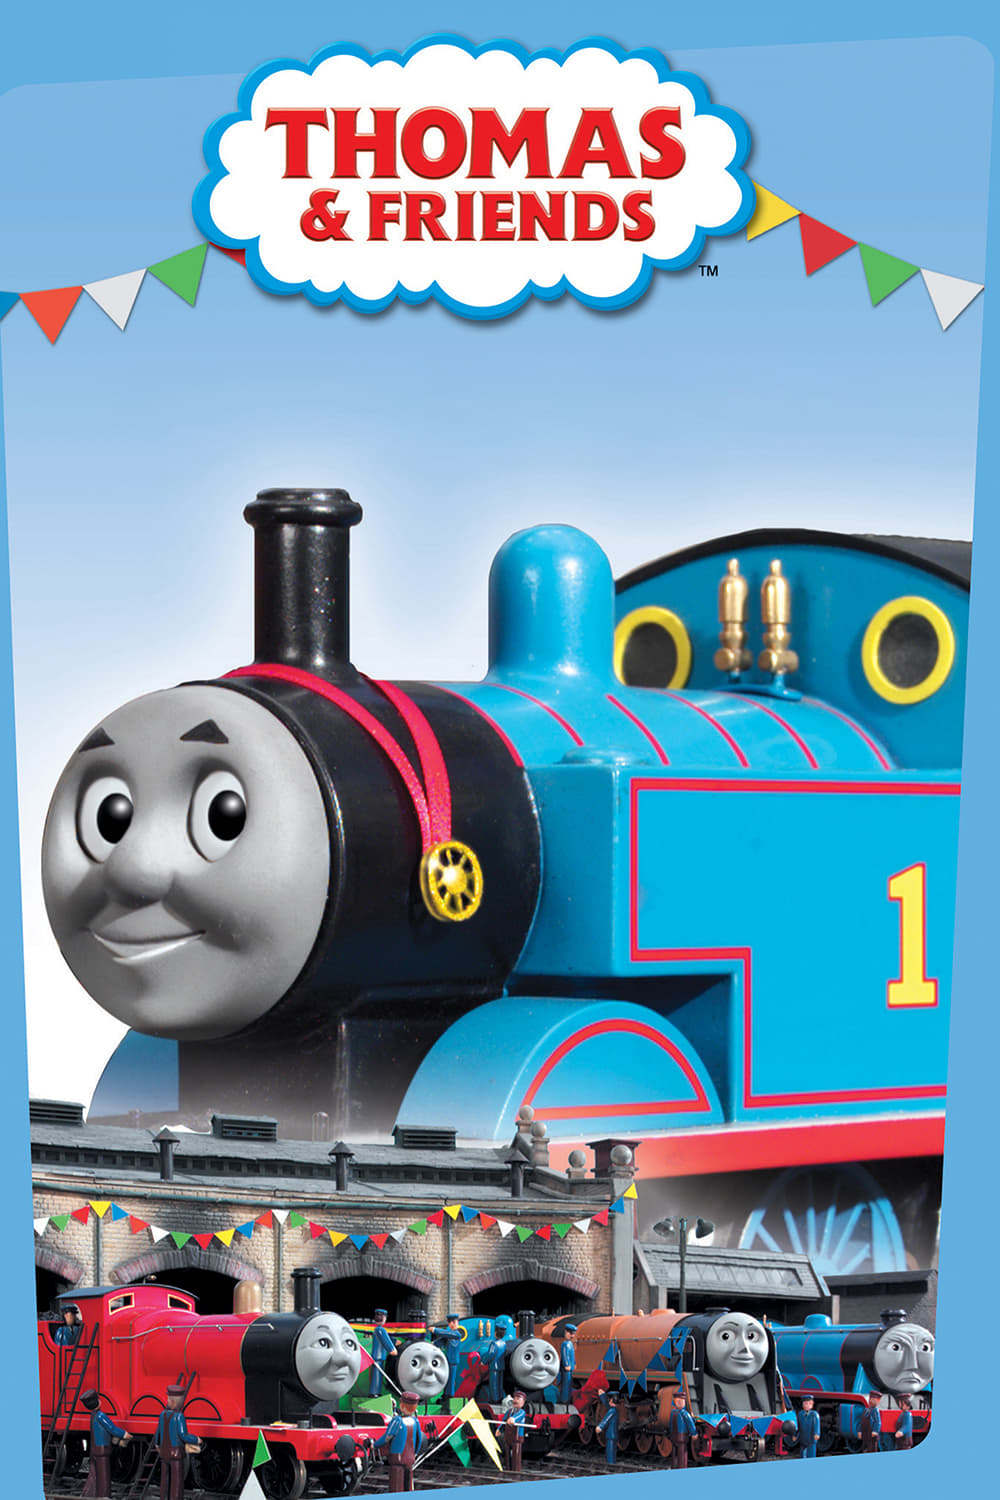 Les saisons de Thomas et ses amis sont-elles disponibles sur Netflix ou autre ?